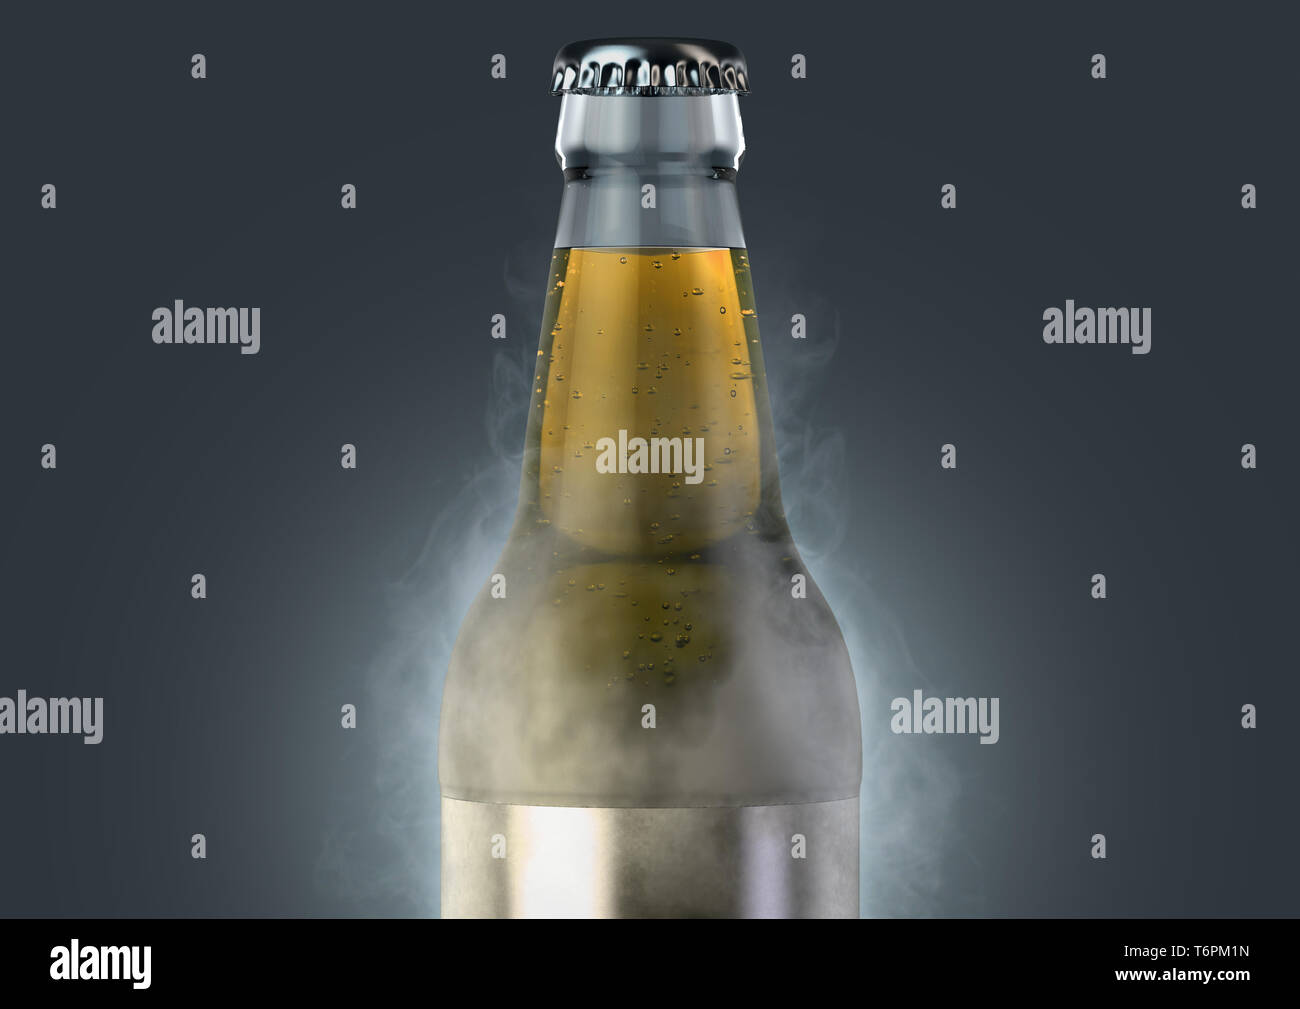 Eine eisige Kälte aus klarem Glas Bier Flasche mit Reif bedeckt und strahlt Eis Sublimation auf einem isolierten dunklen Studio Hintergrund - 3D-Rendering Stockfoto